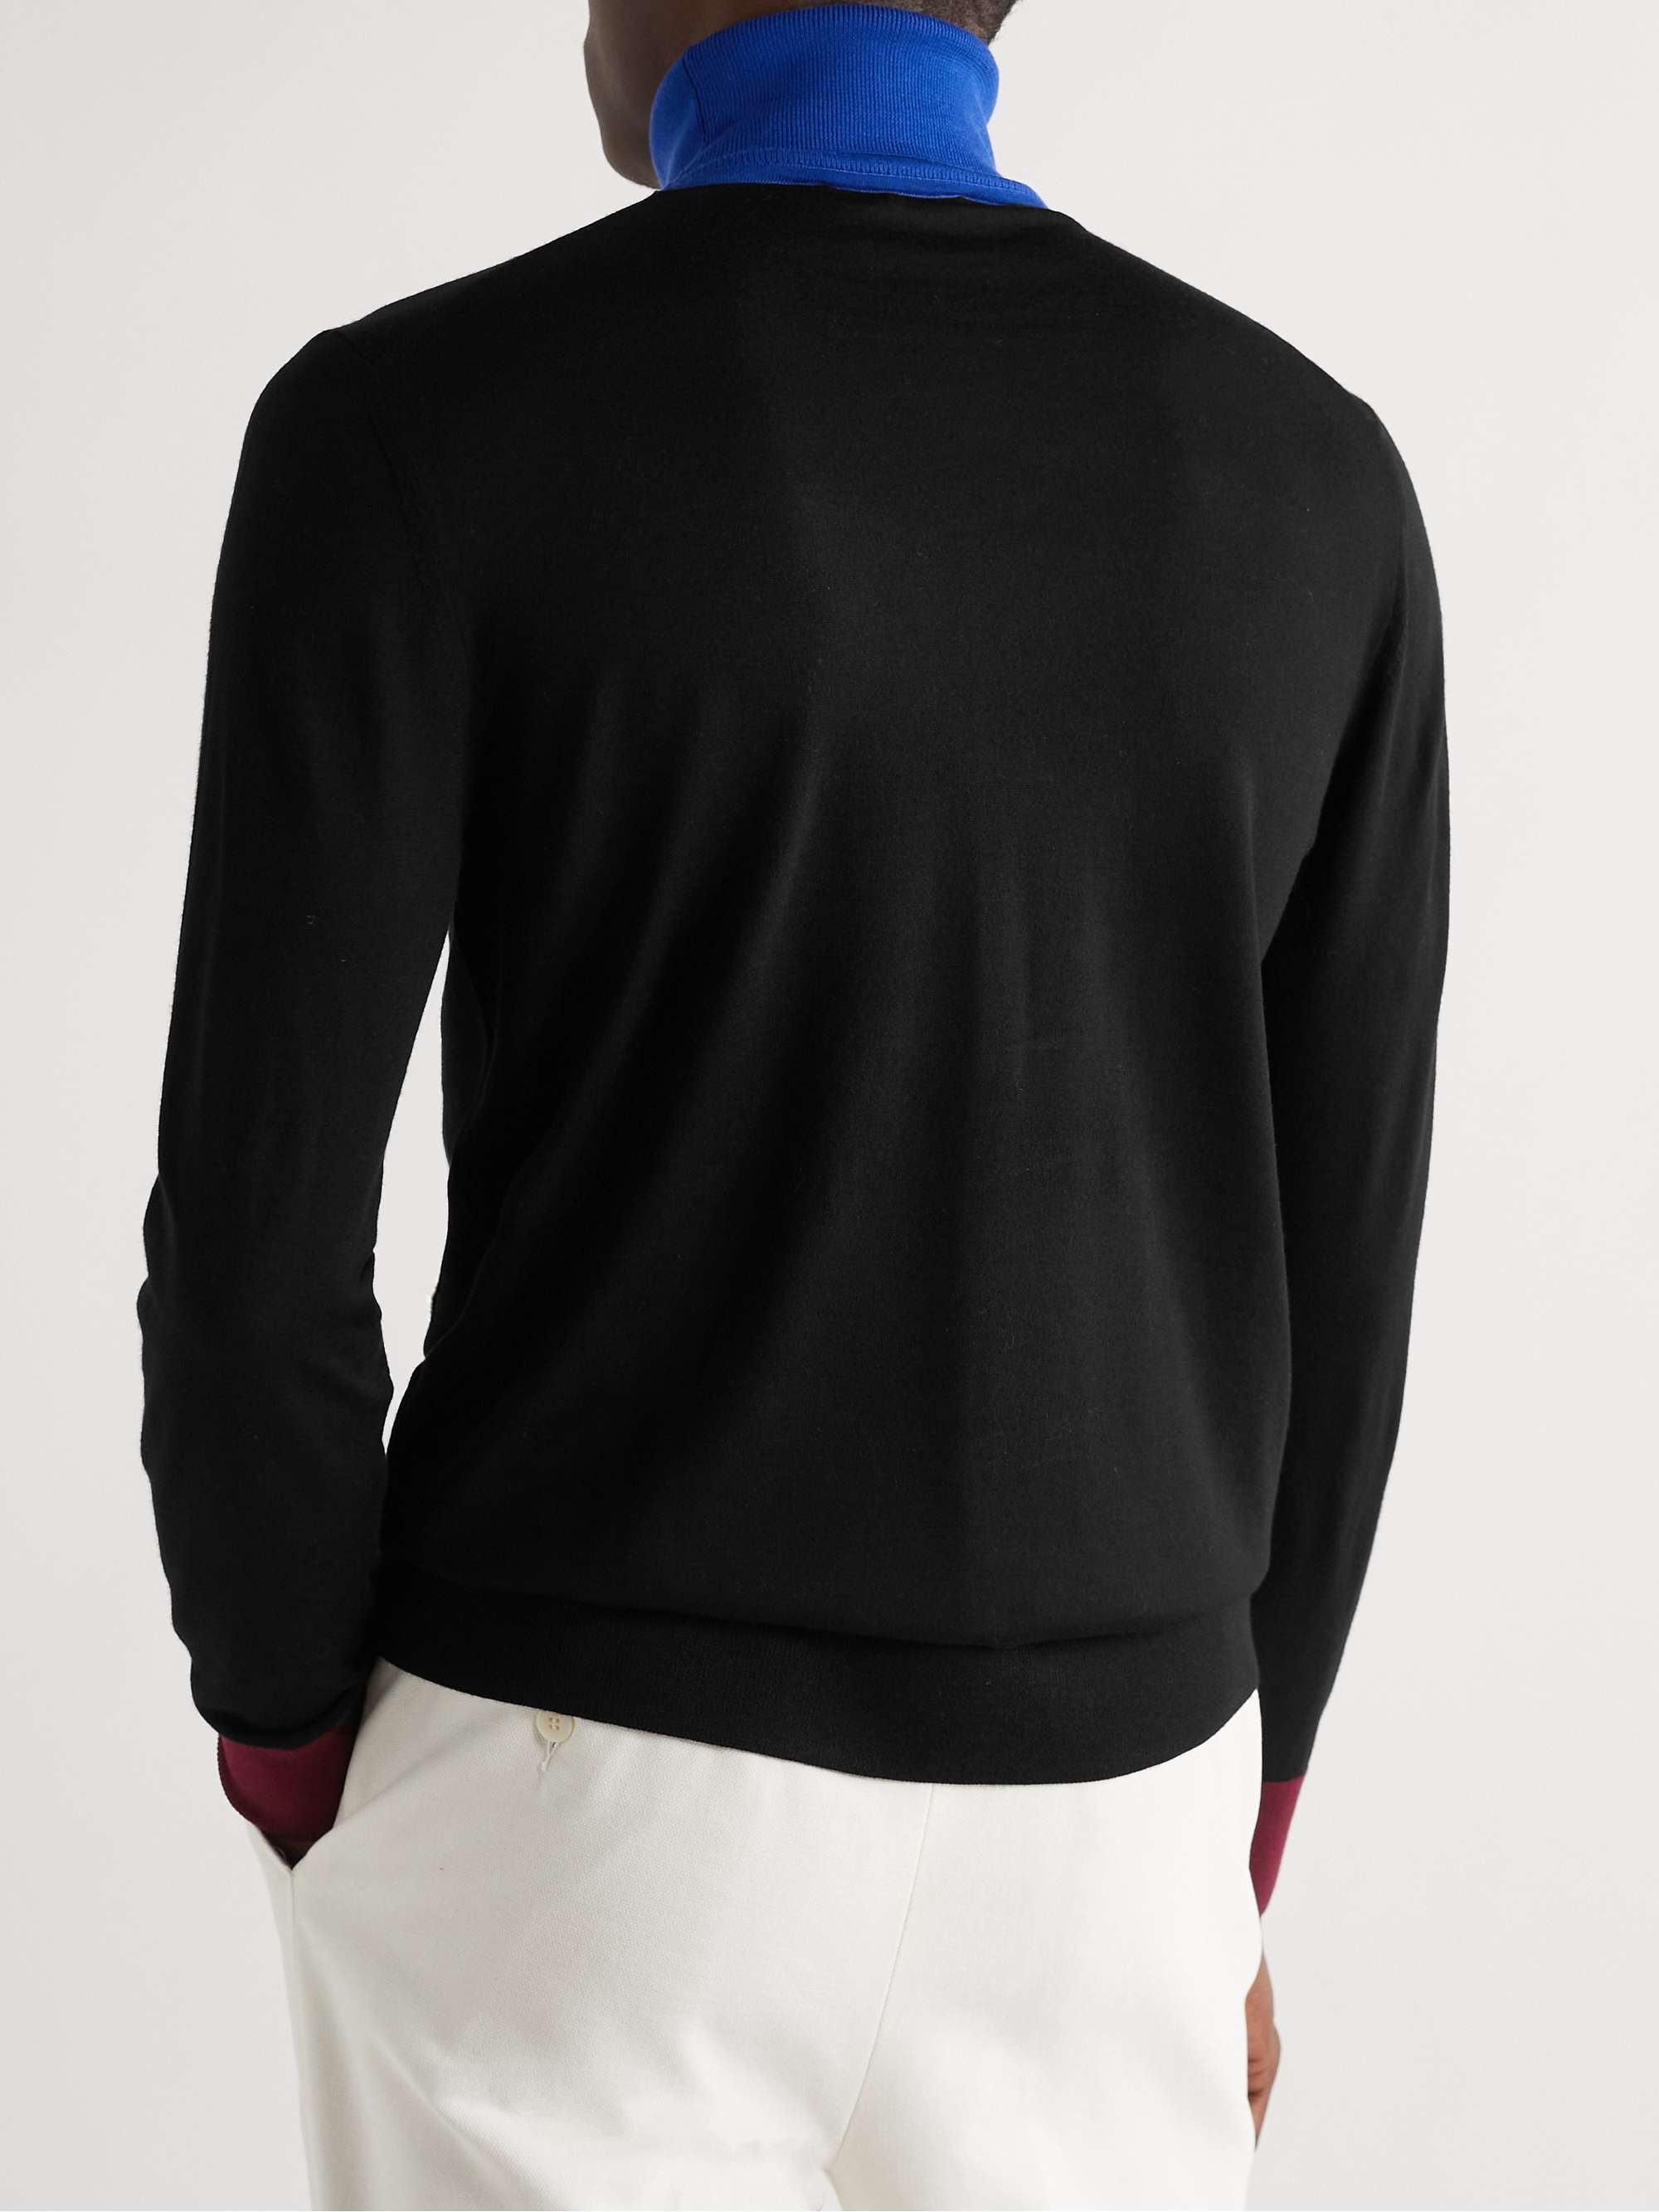 GABRIELA HEARST Jermaine Colour-Block Virgin Wool Rollneck Sweater